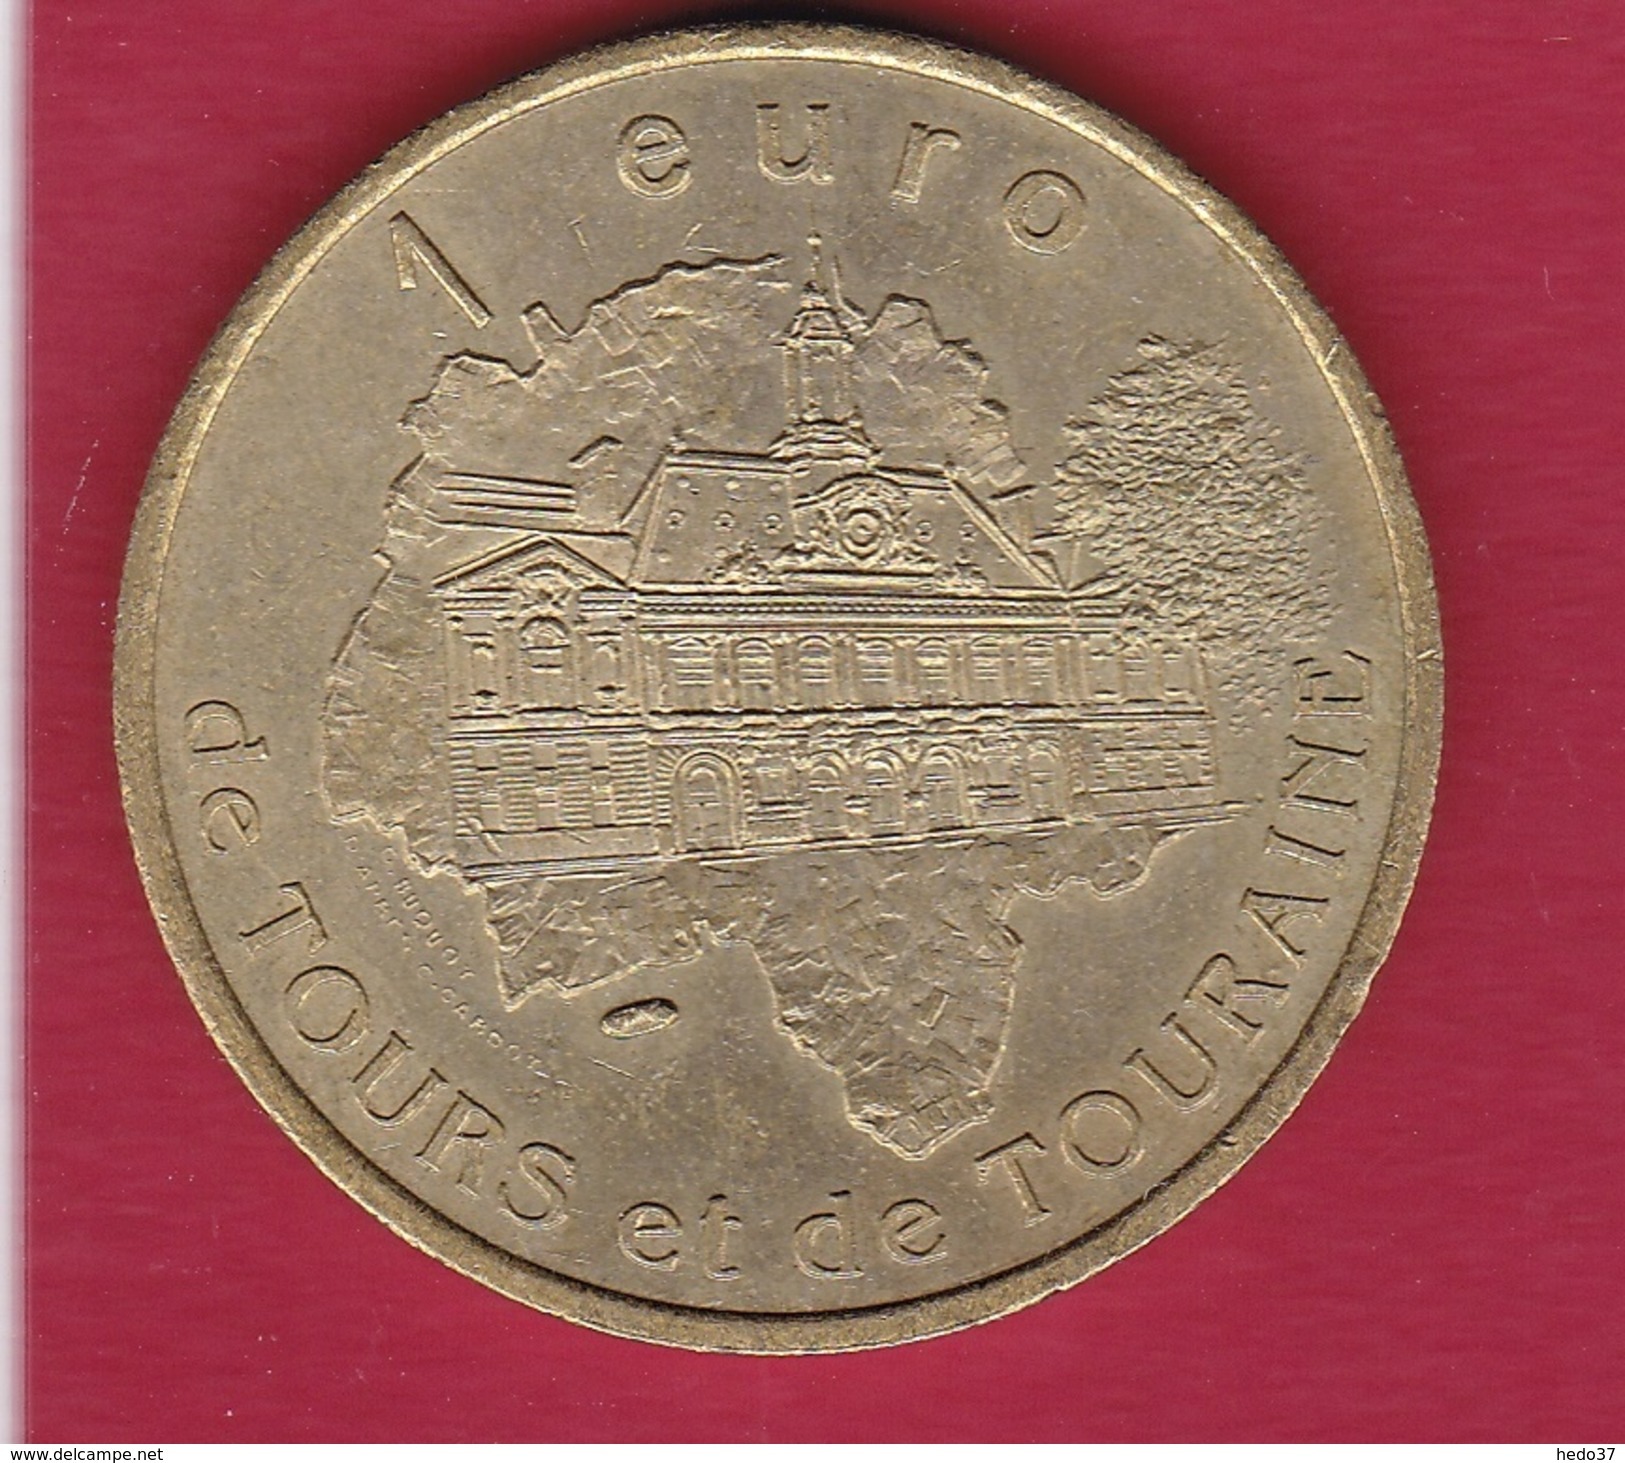 France - Chateau-renault - 1 Euro - 1997 - Euros Des Villes